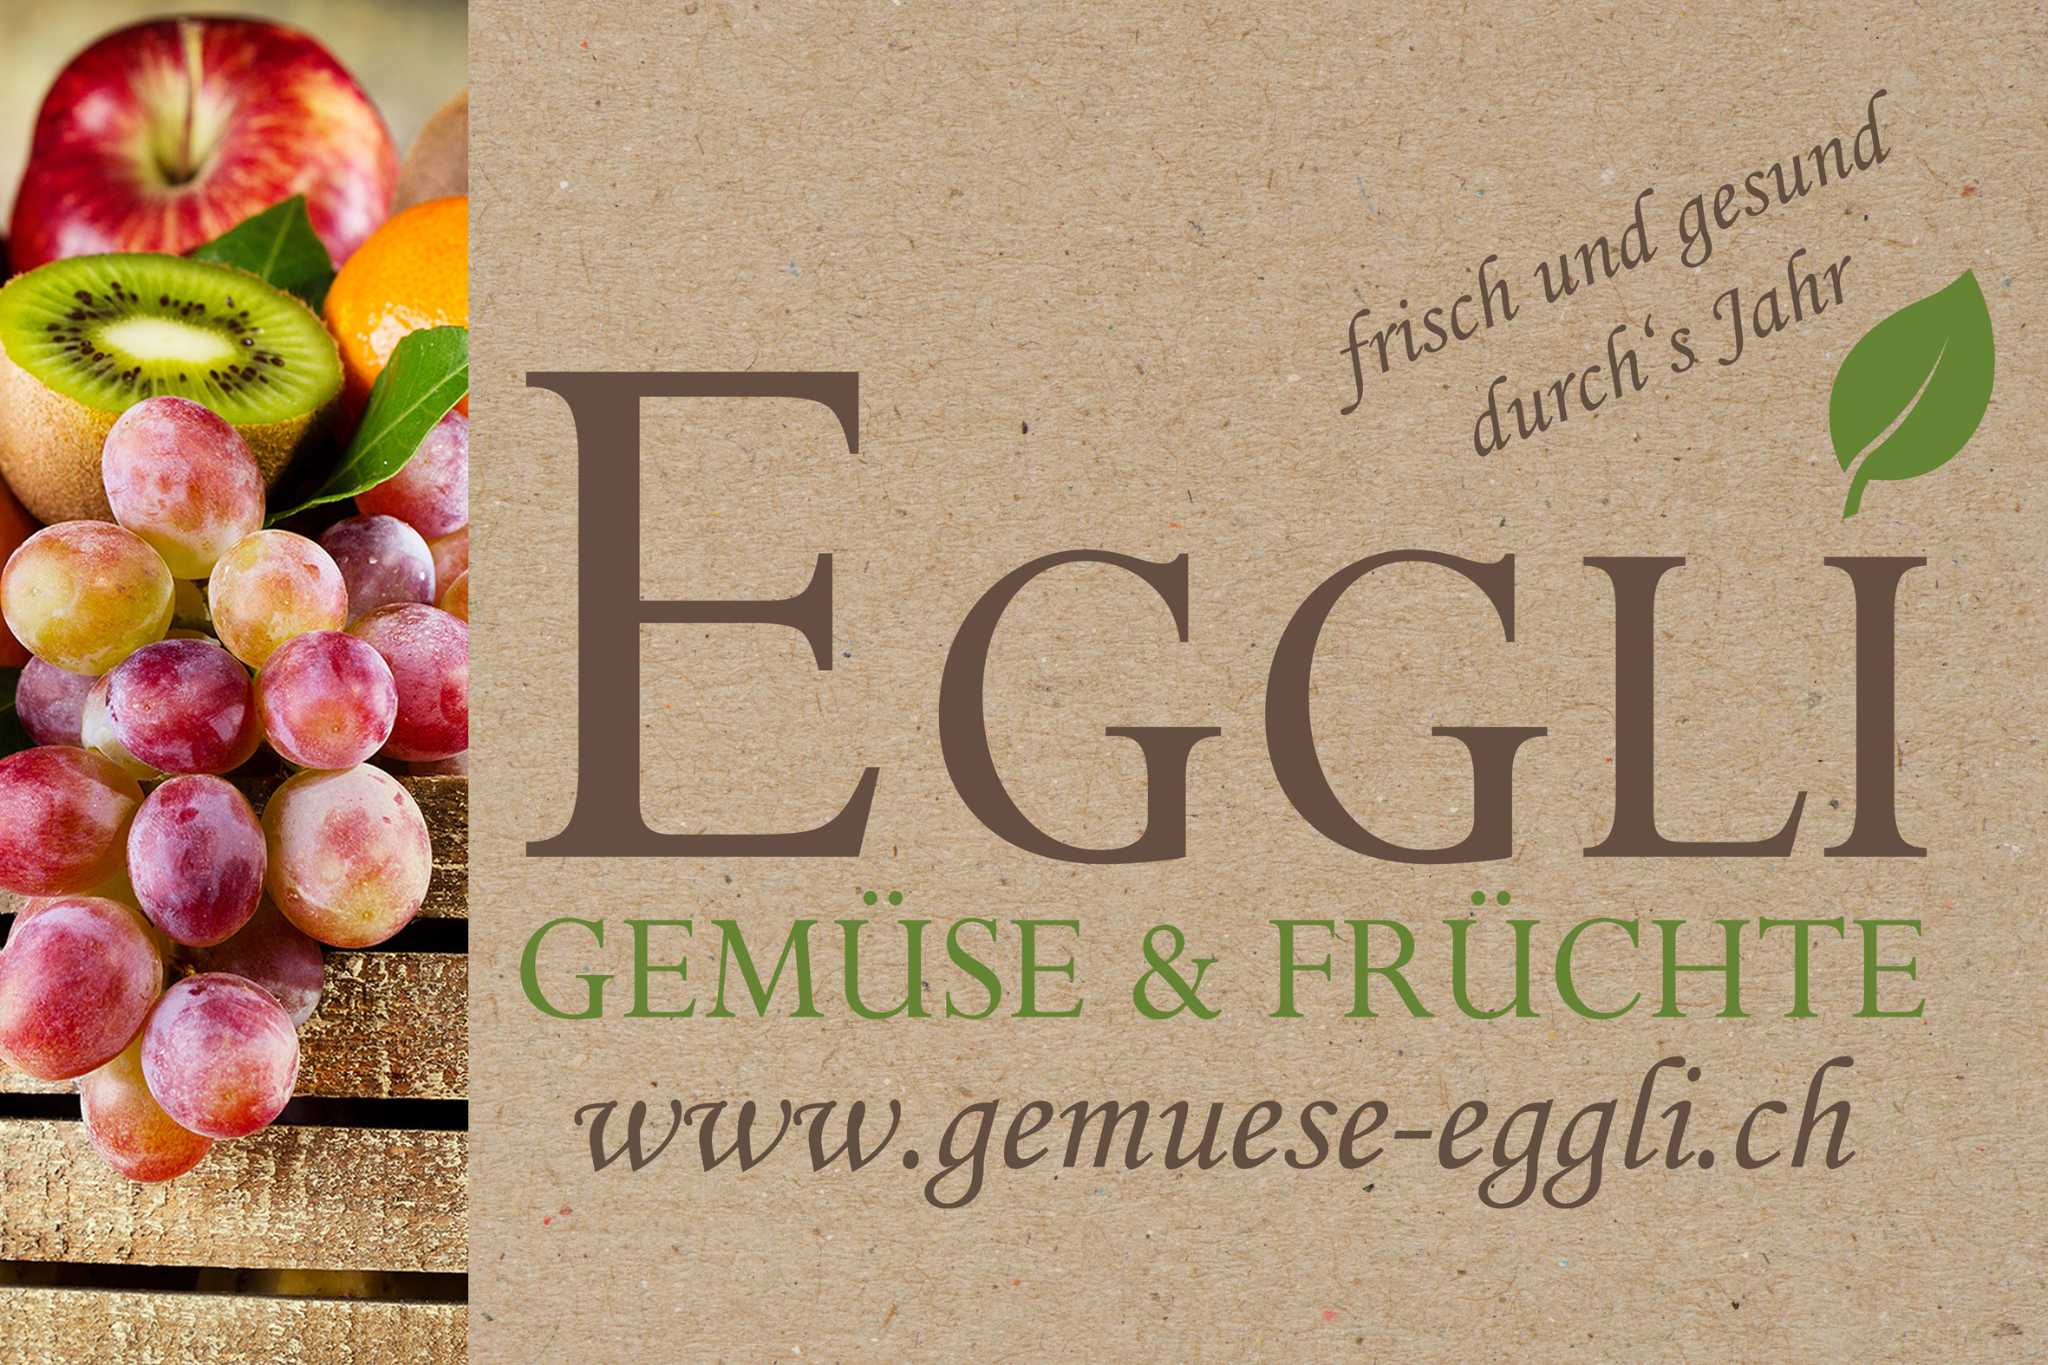 Gemüse & Früchte Eggli